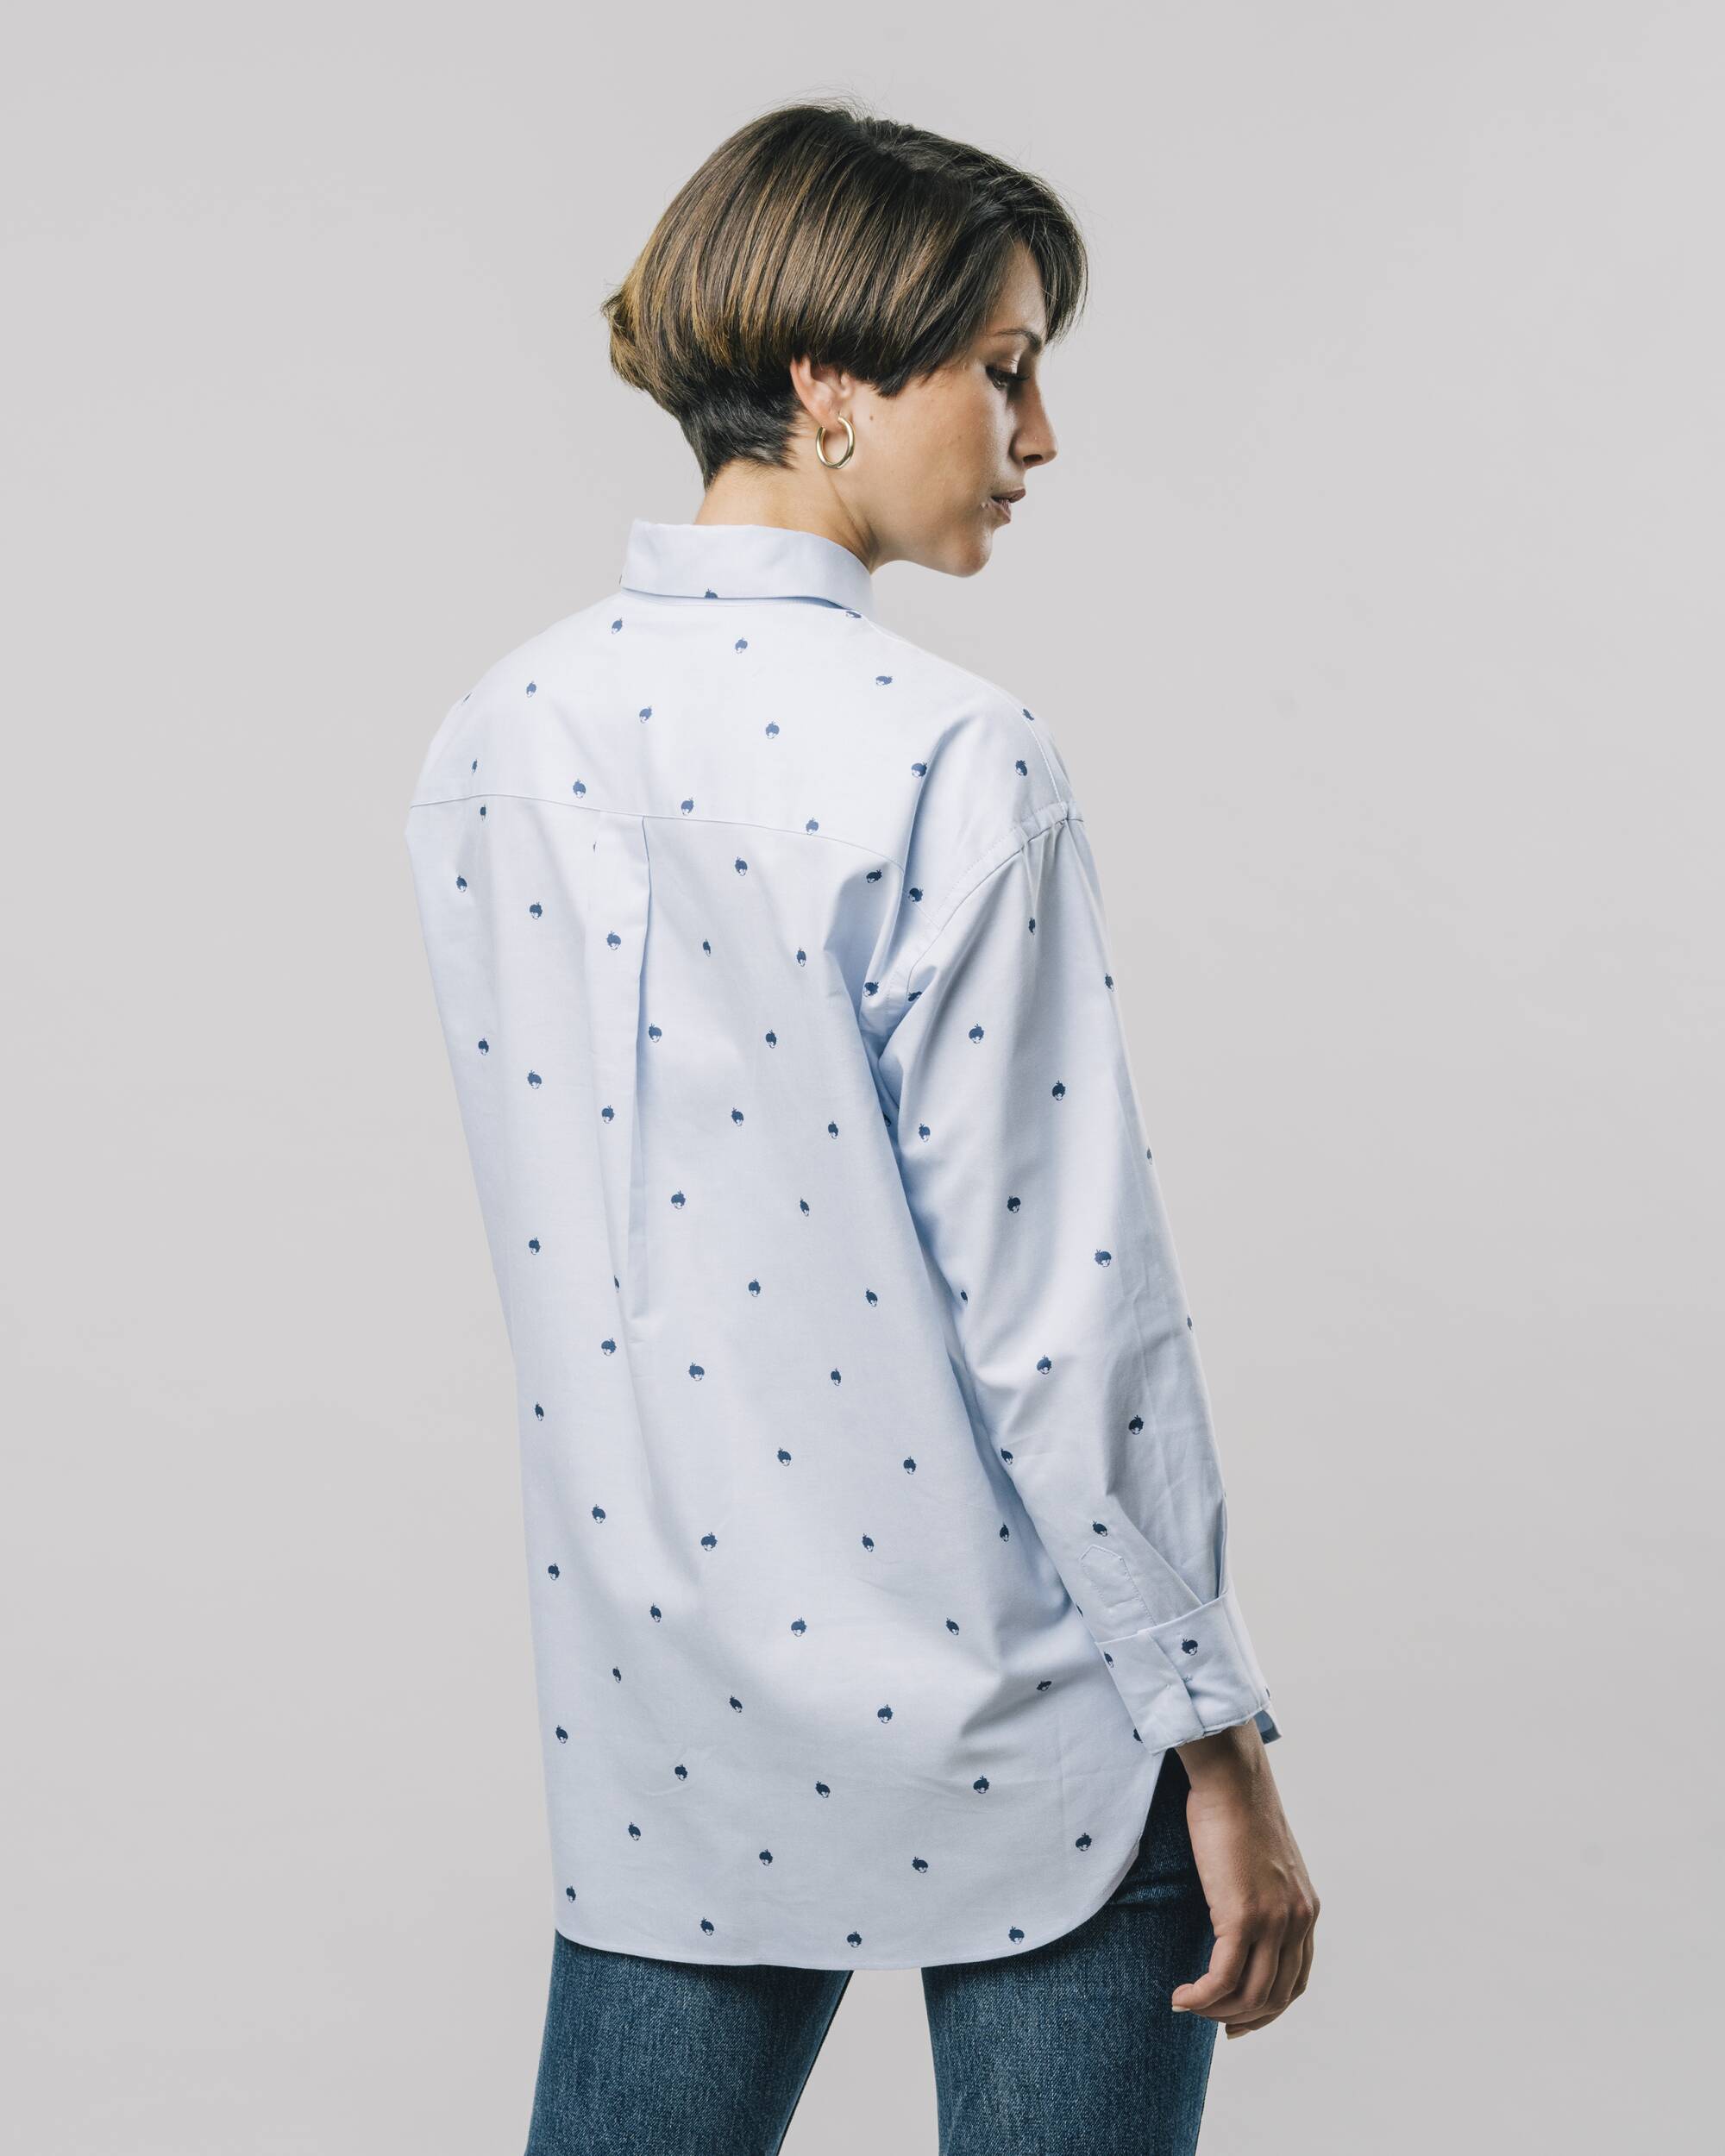 Hellblaue, bedruckte, langärmlige Bluse Yoko aus 100% Bio-Baumwolle von Brava Fabrics